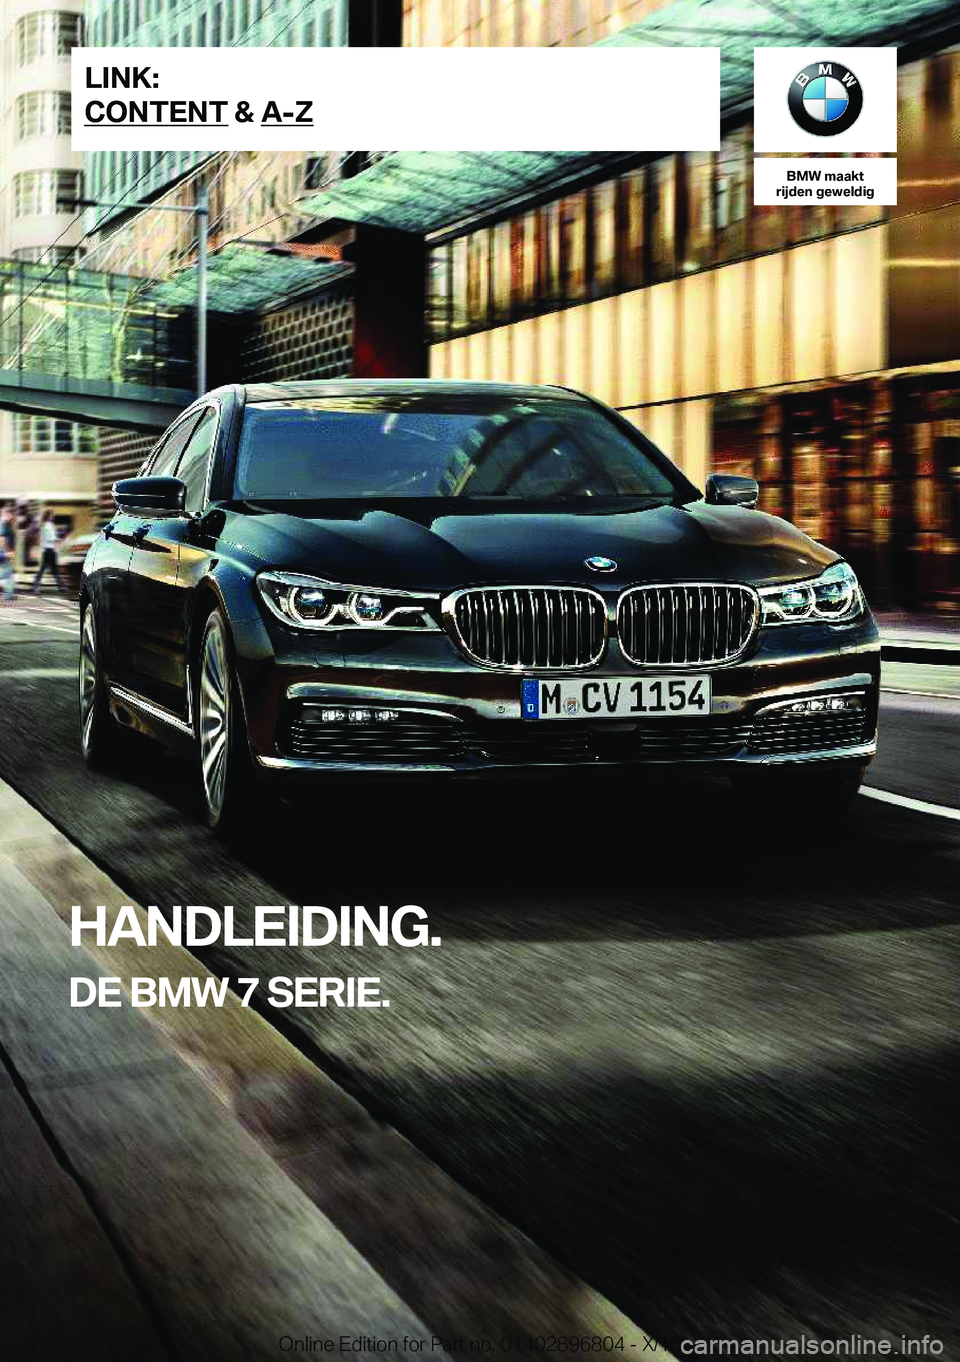 BMW 7 SERIES 2019  Instructieboekjes (in Dutch) �B�M�W��m�a�a�k�t
�r�i�j�d�e�n��g�e�w�e�l�d�i�g
�H�A�N�D�L�E�I�D�I�N�G�.
�D�E��B�M�W��7��S�E�R�I�E�.�L�I�N�K�:
�C�O�N�T�E�N�T��&��A�-�Z�O�n�l�i�n�e��E�d�i�t�i�o�n��f�o�r��P�a�r�t��n�o�.��0